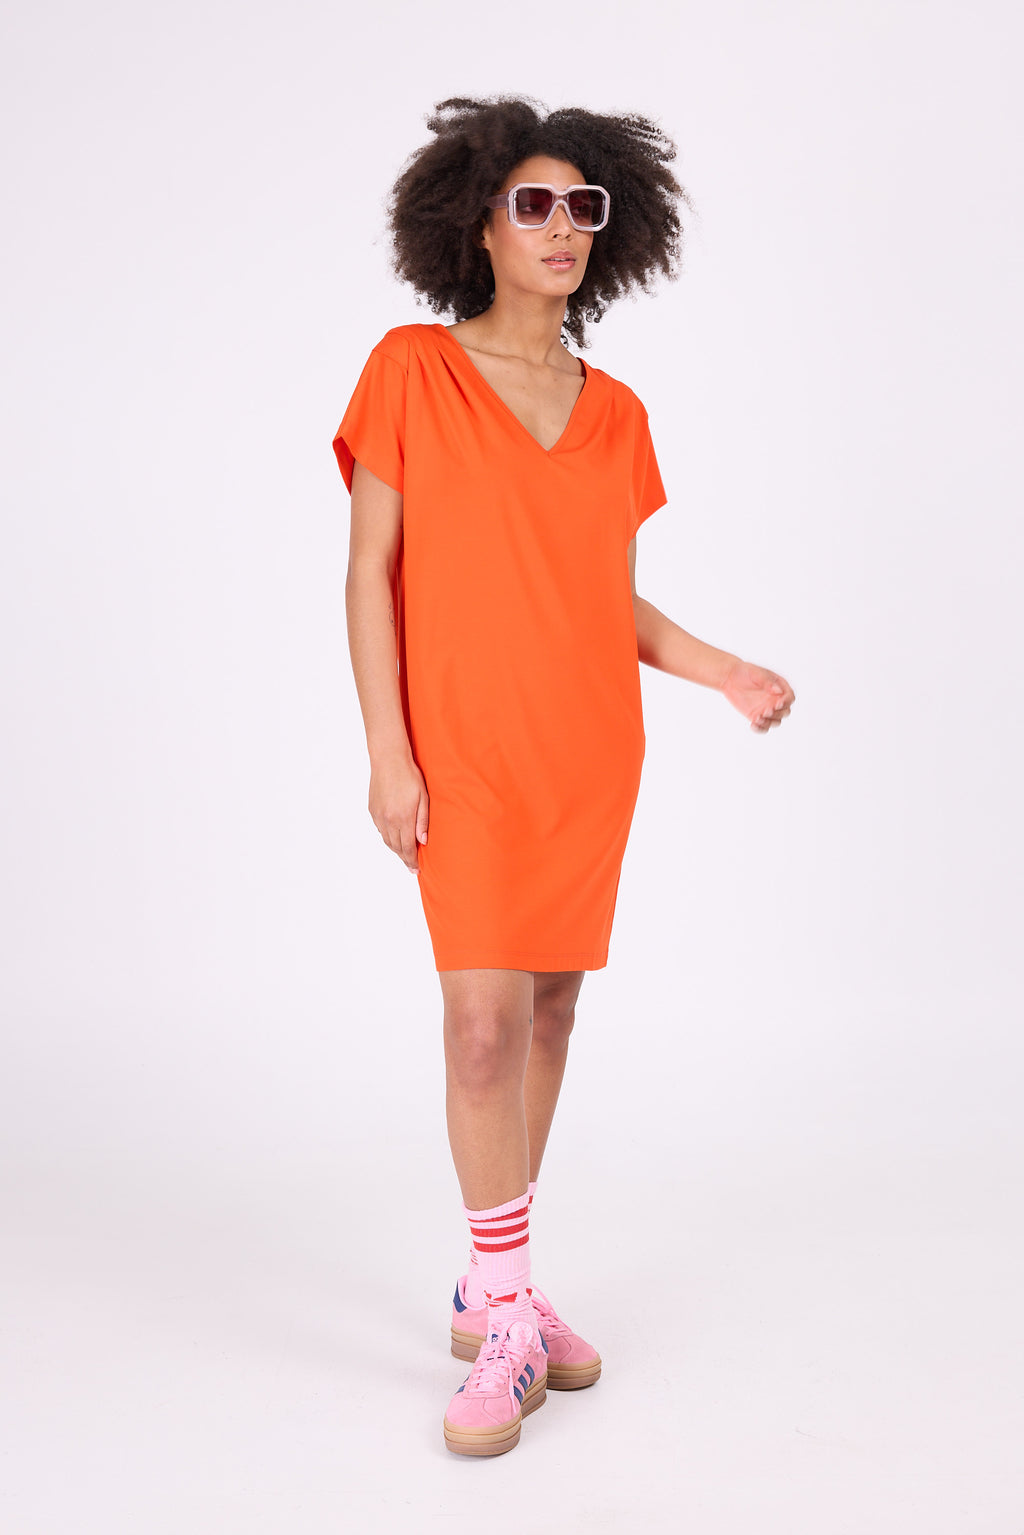 Dahlia spicy orange jersey dress